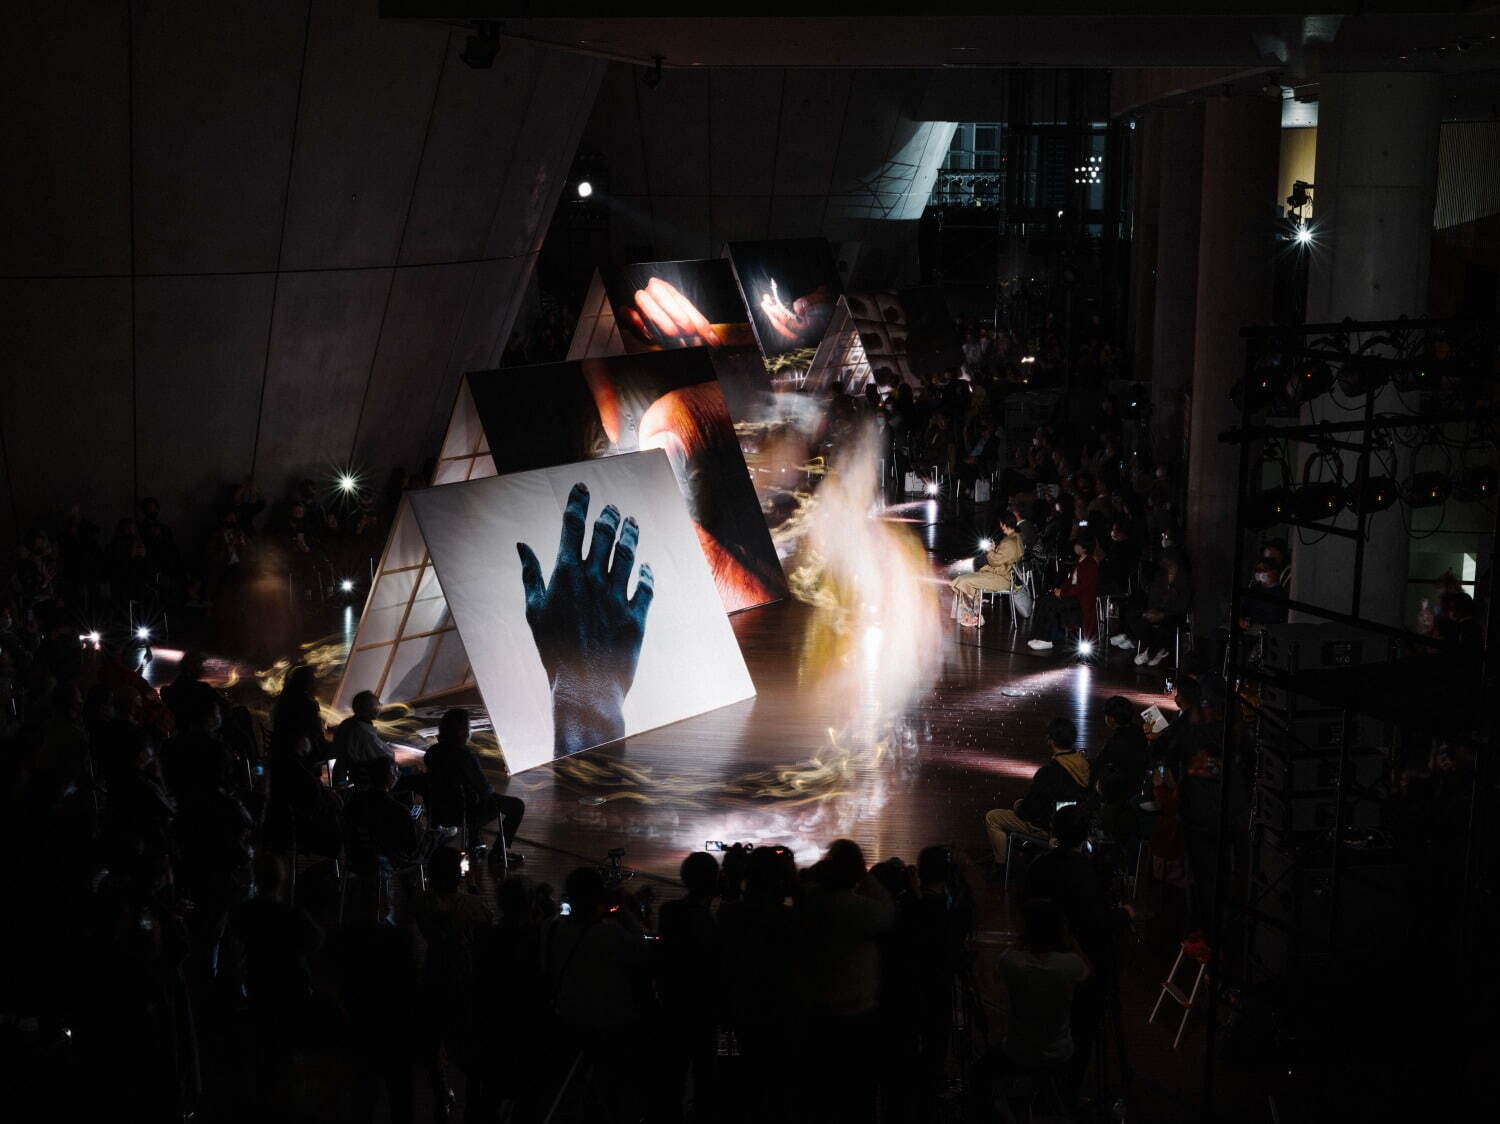 「合掌」
2021年3月、国立新美術館で行われたインスタレーションの様子
Photo by Tatsuki Masaru